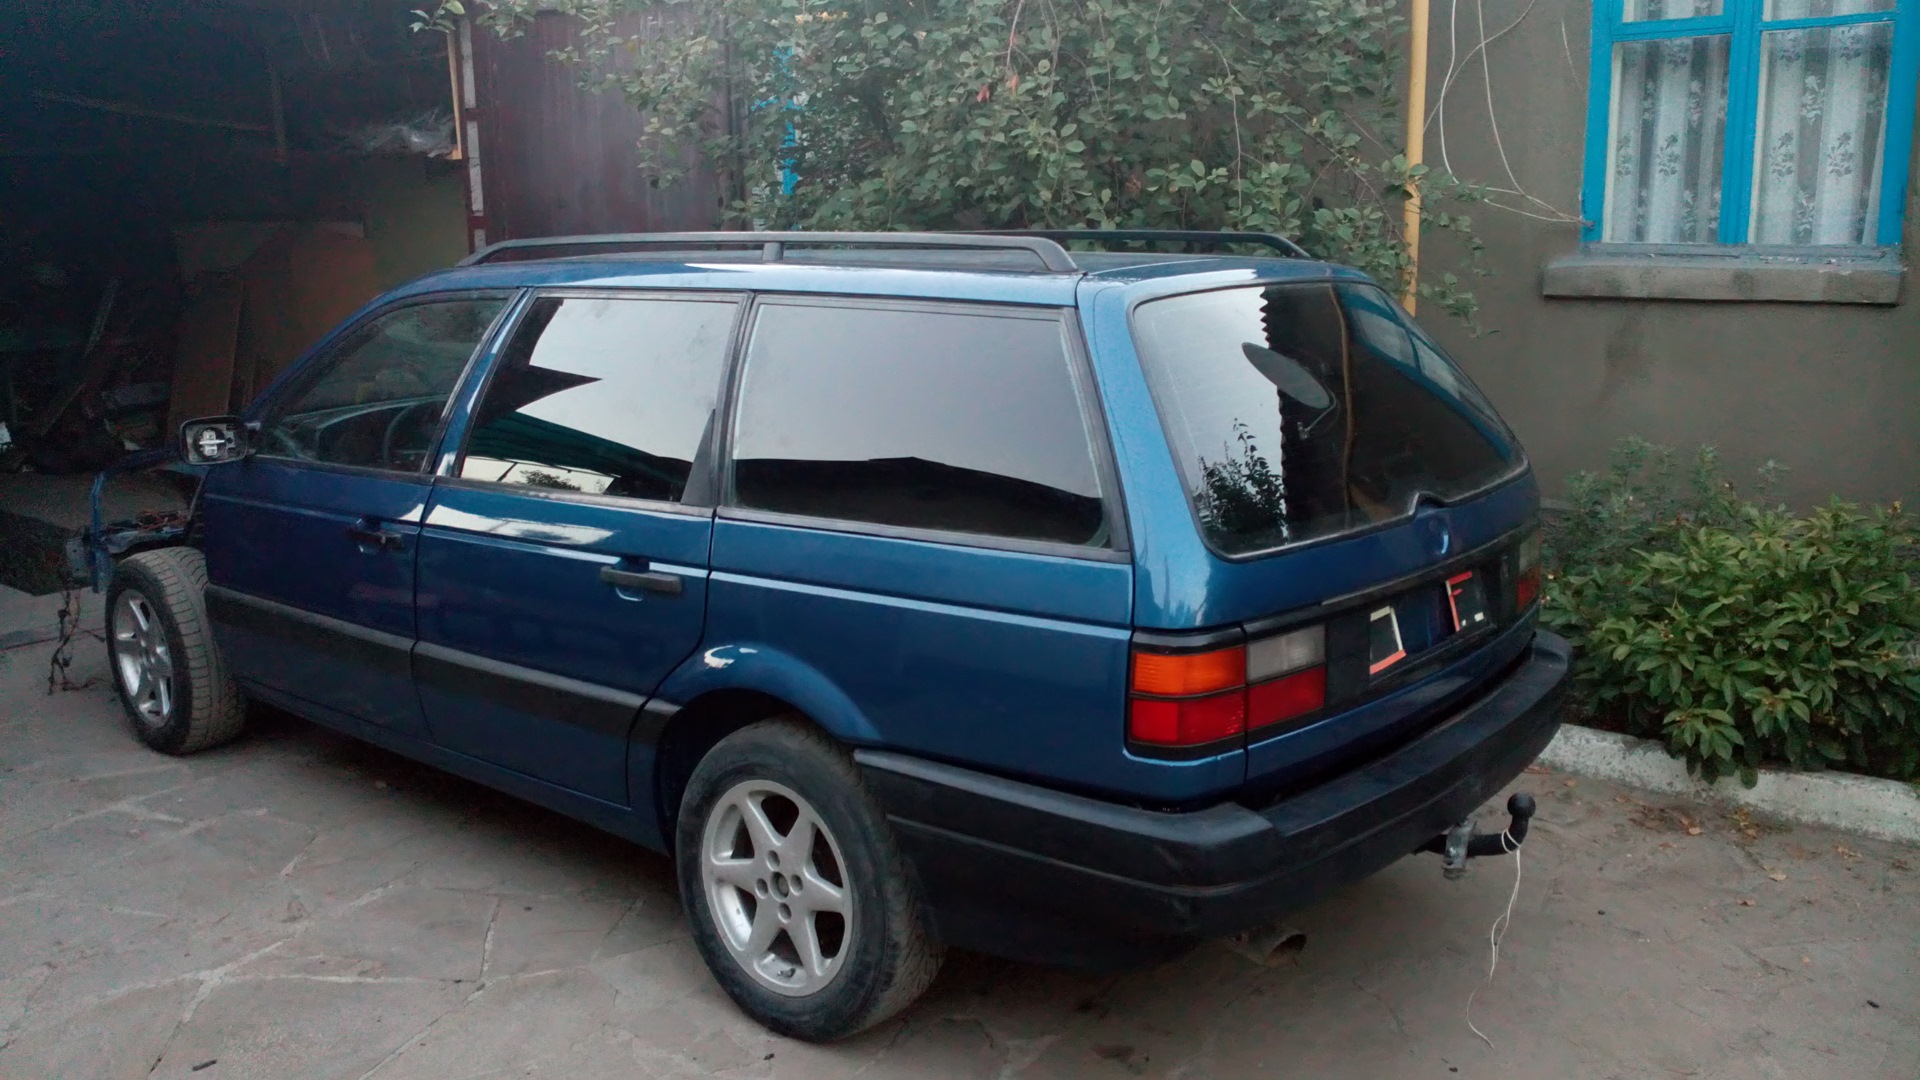 Машину фольксваген пассат б3. Volkswagen Passat b3 универсал 1993. Volkswagen Passat b3 1990 универсал. Фольксваген Пассат б3 универсал синий. Volkswagen Passat b3 универсал синий.